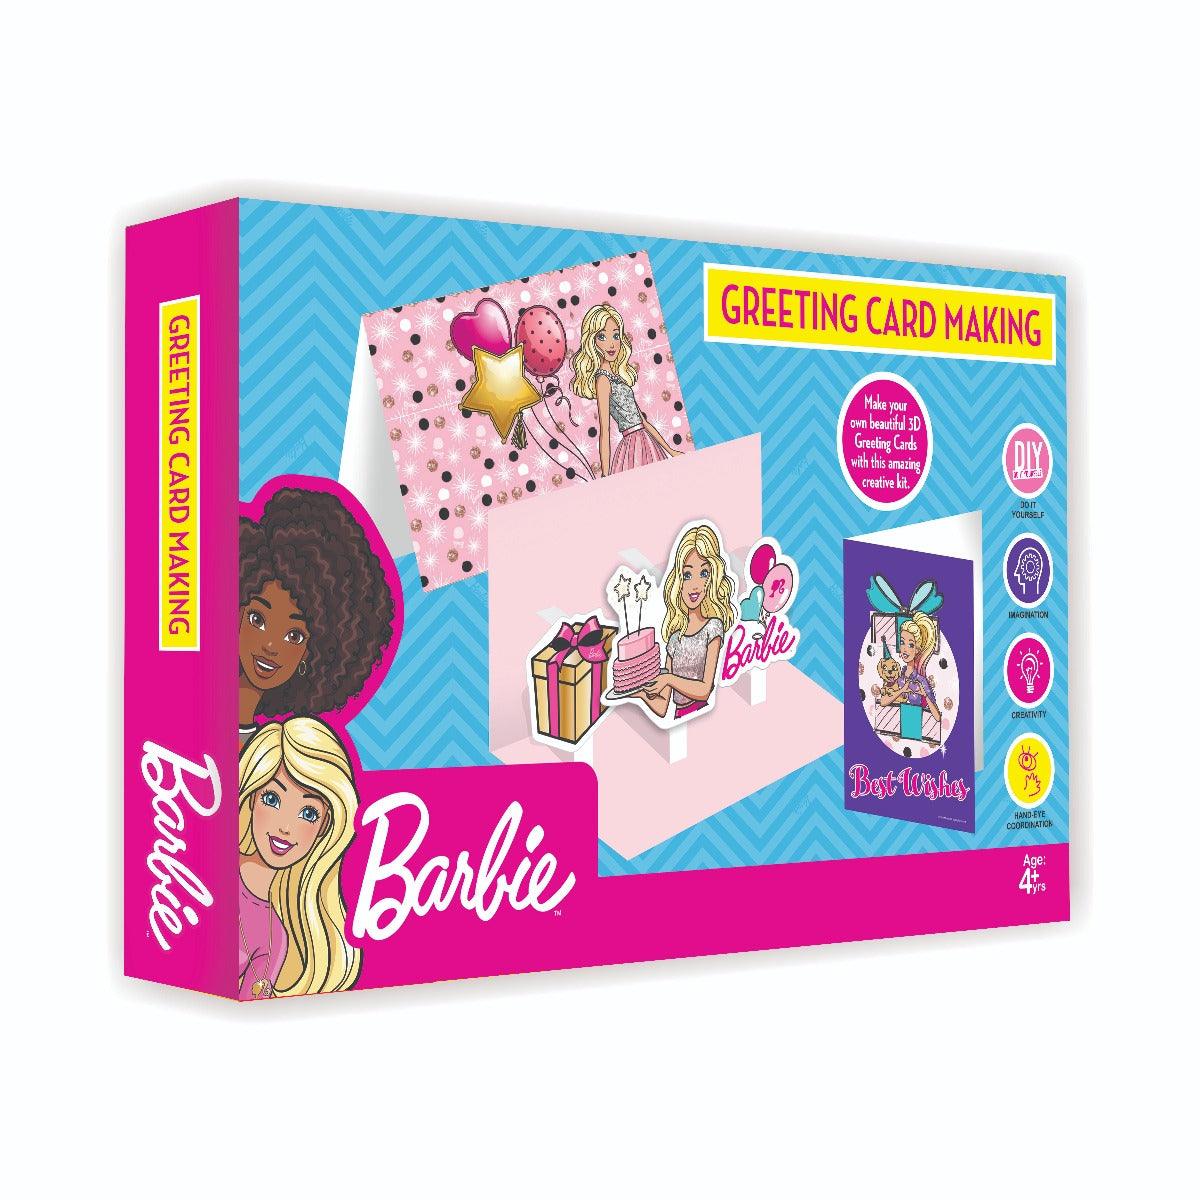 Barbie Greeting Card Making Kit